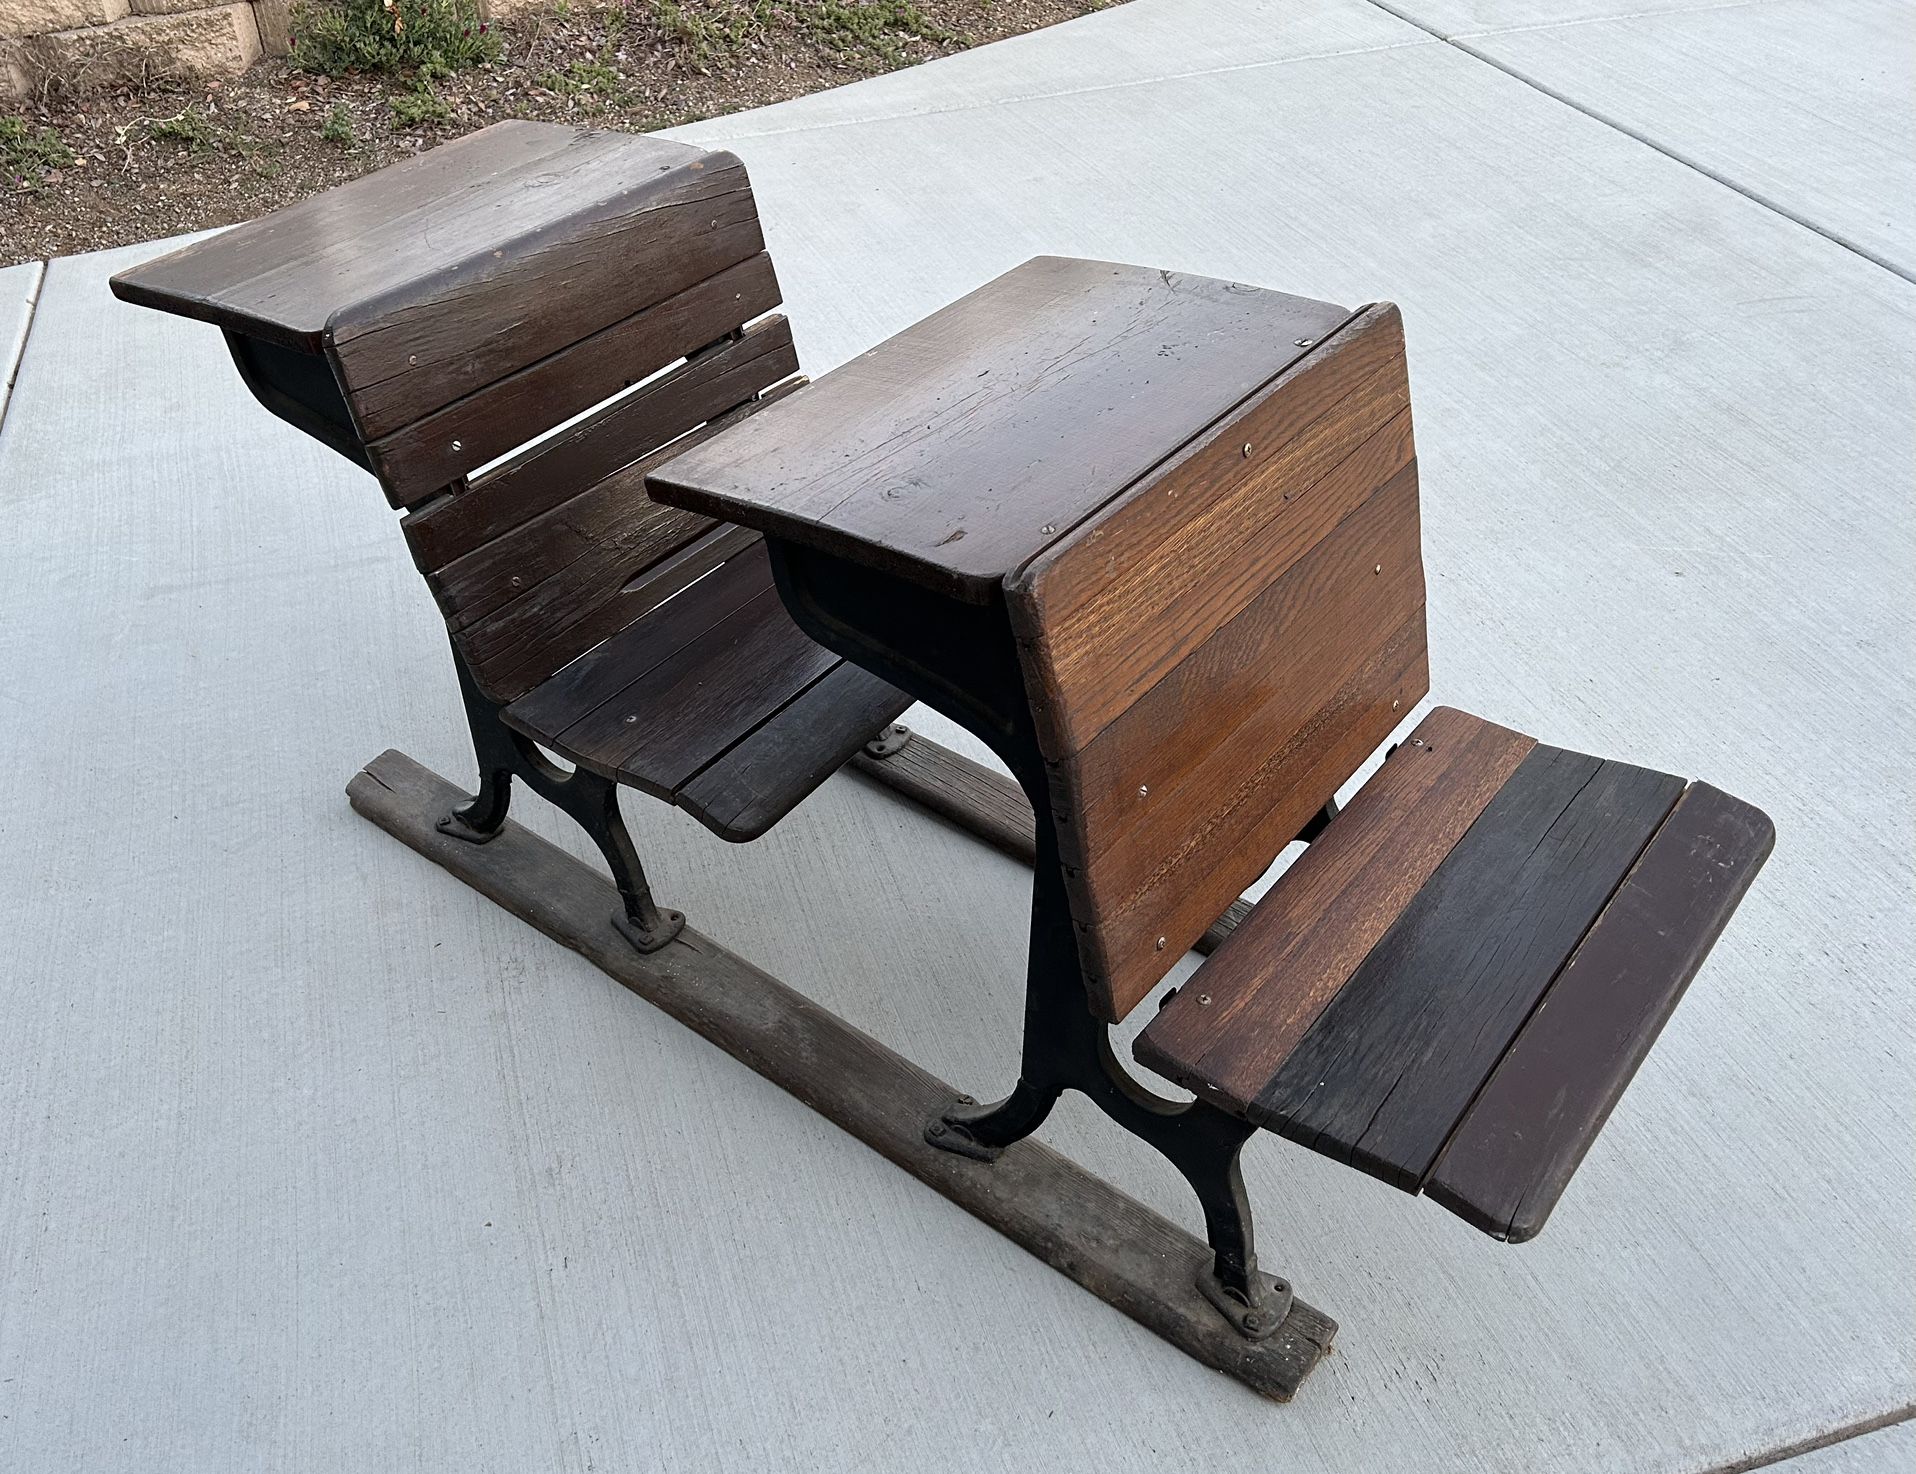 Antique School Desk - Wooden